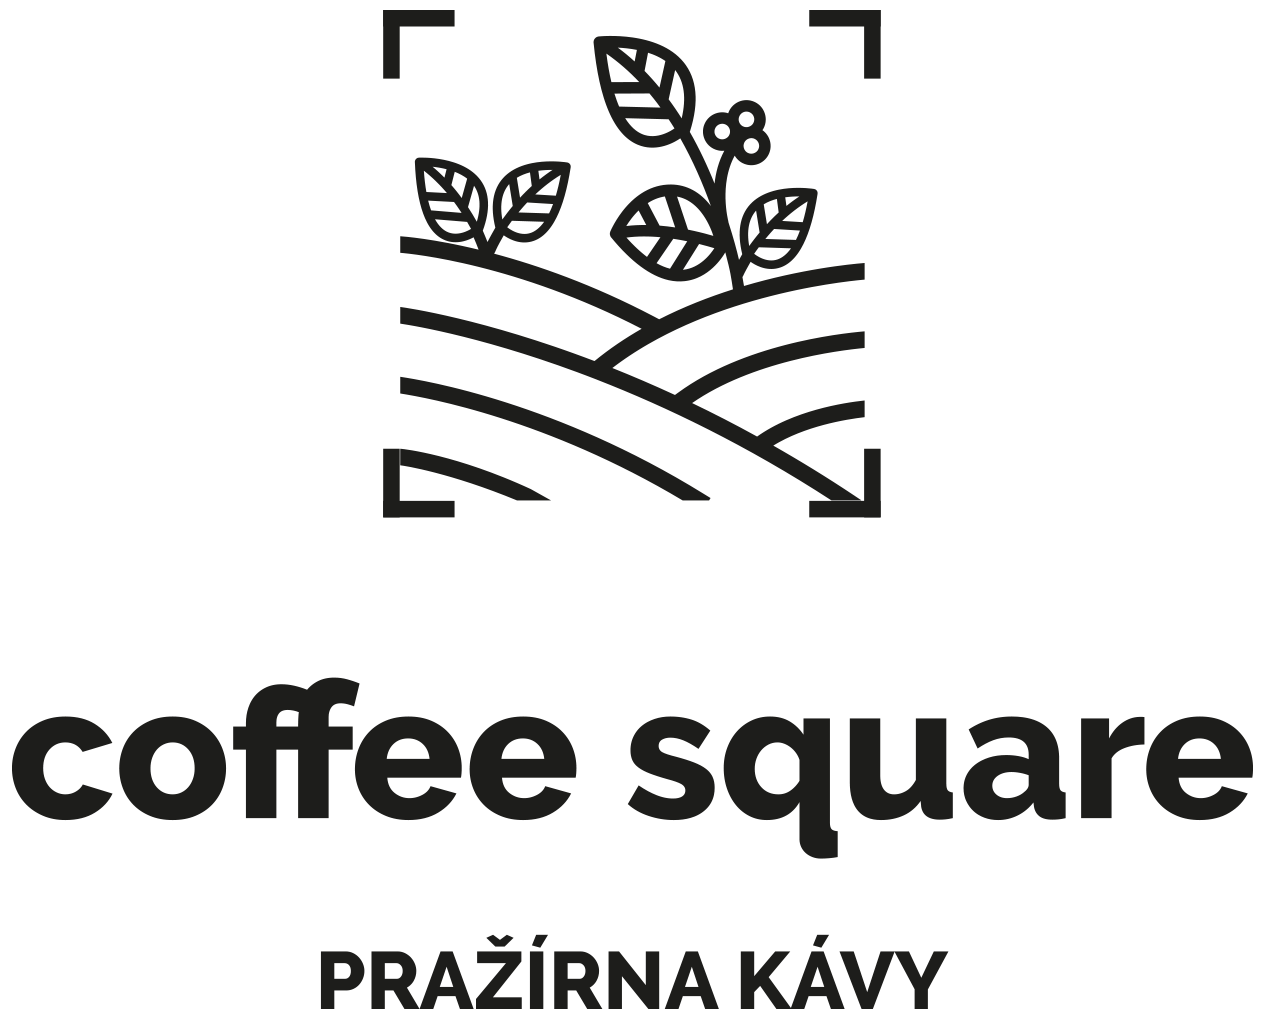 www.coffeesquare.cz